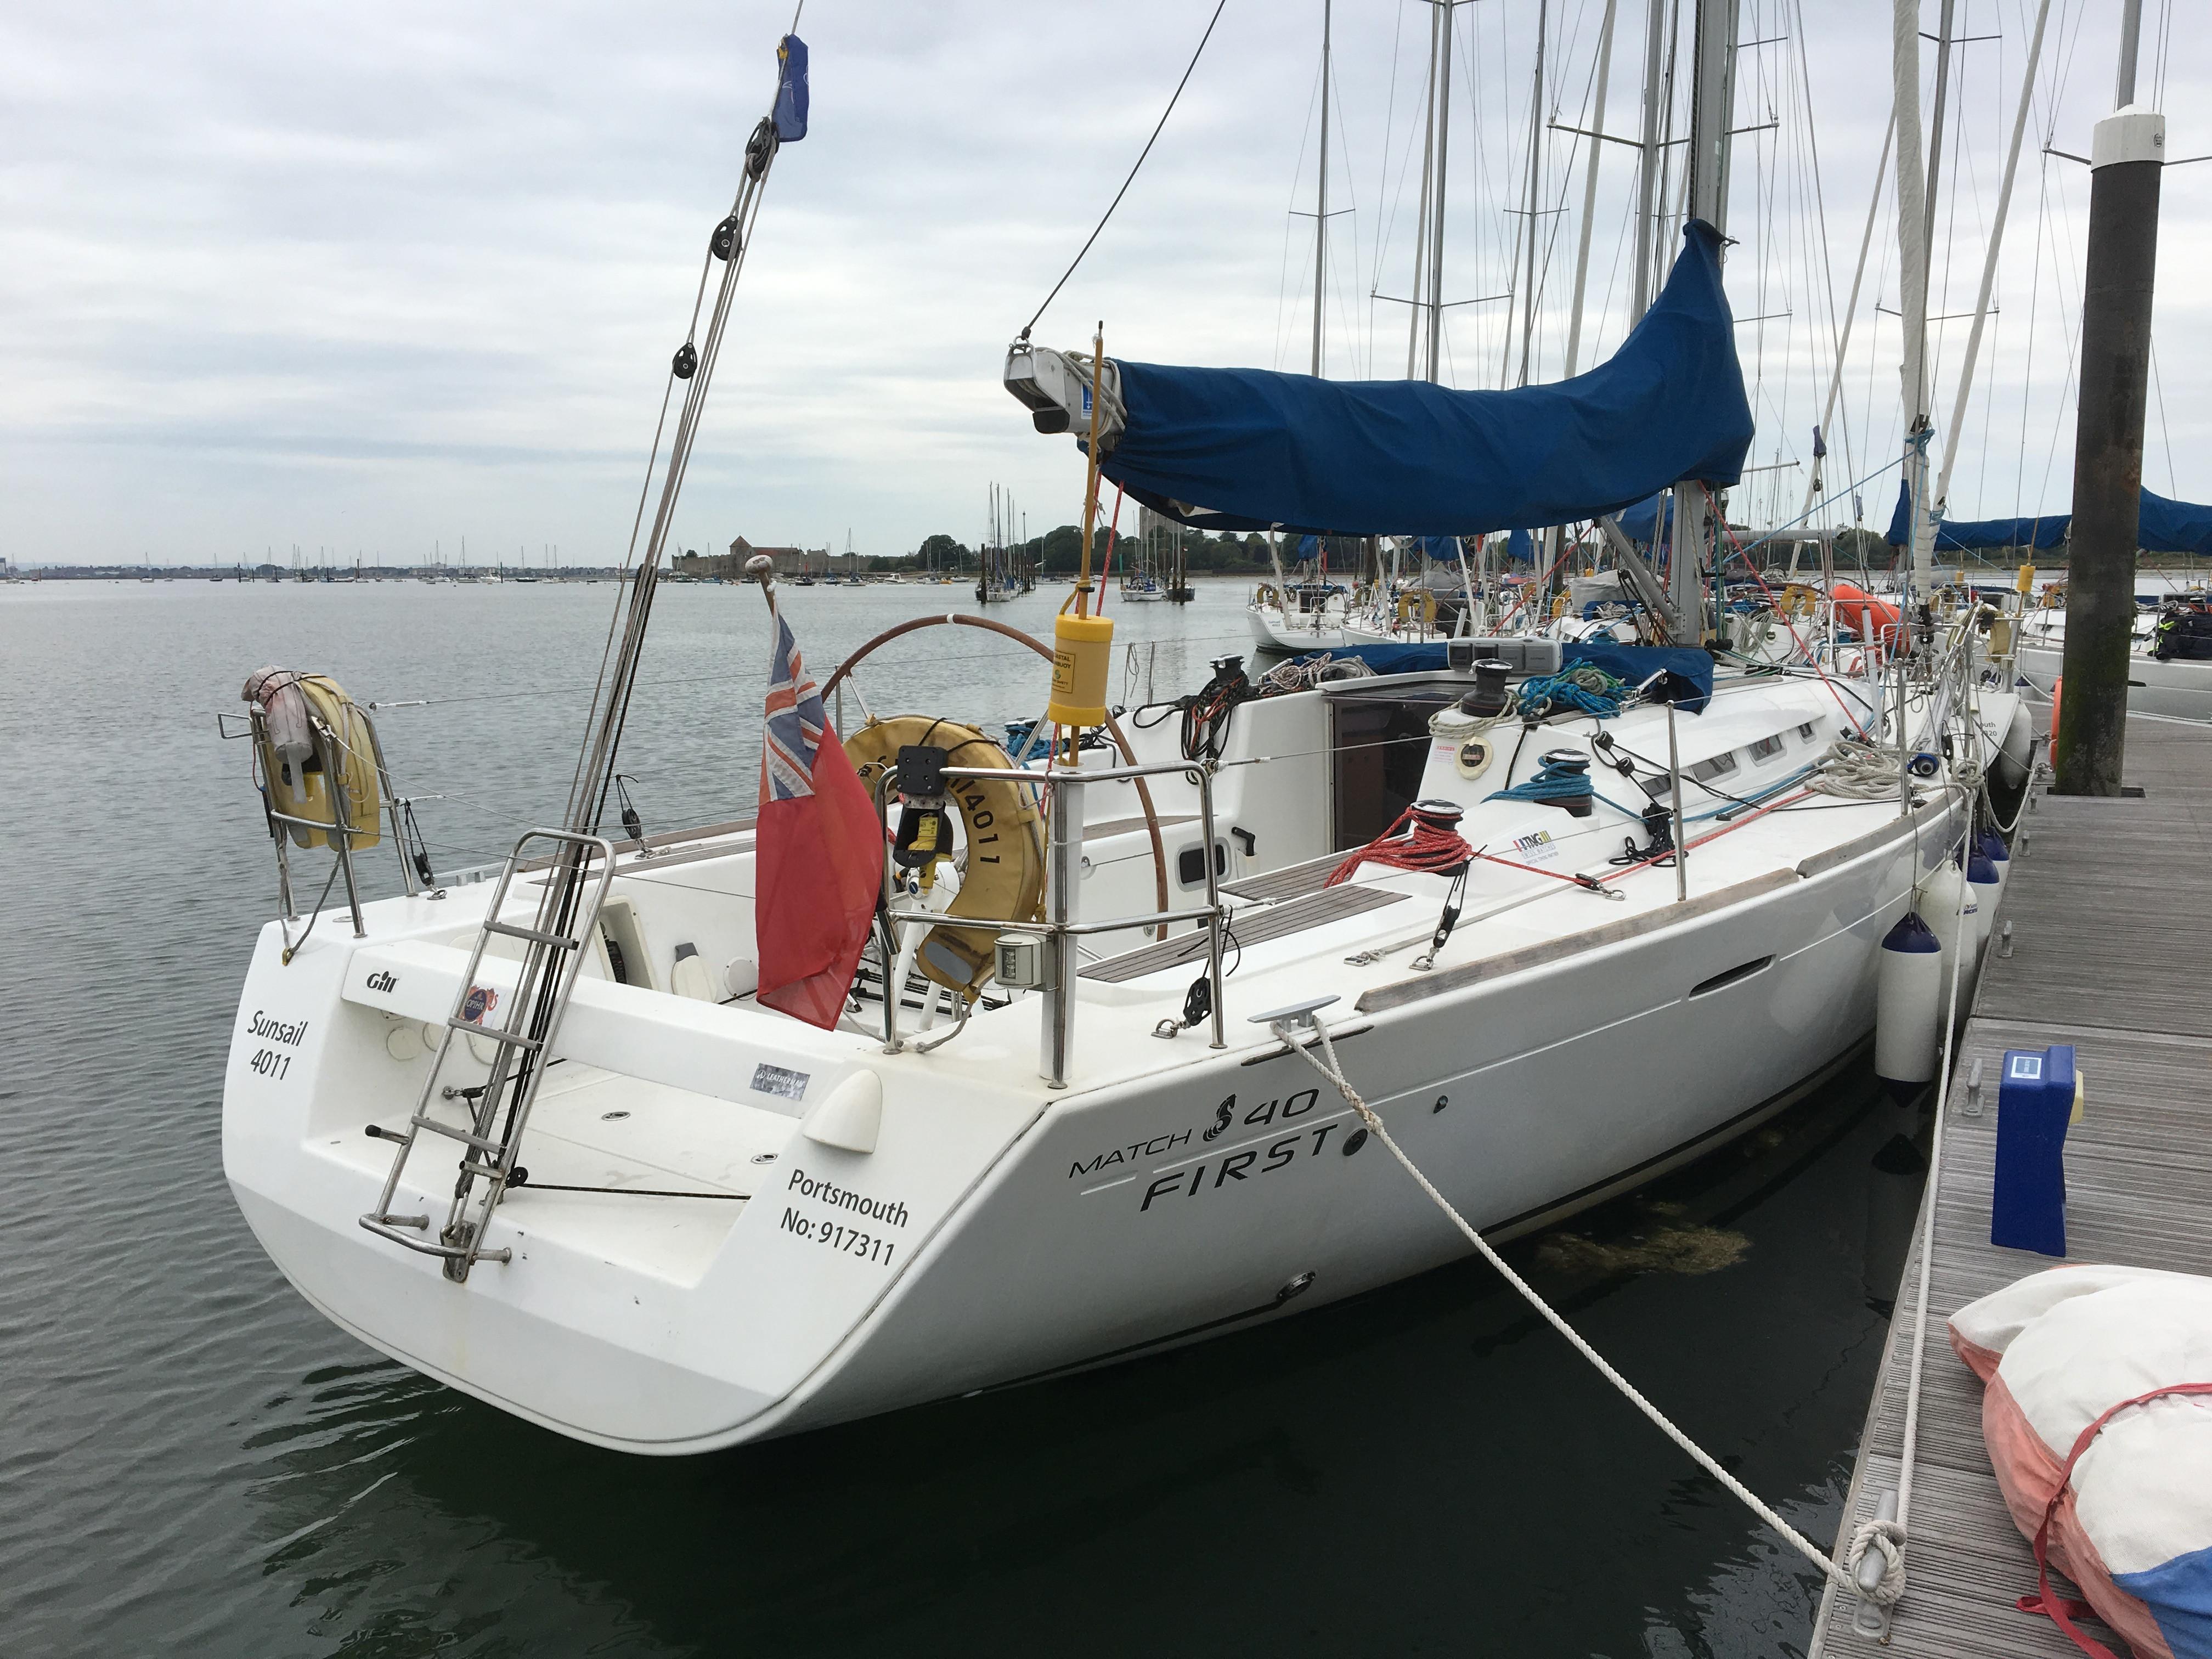 beneteau 40 sailboat for sale